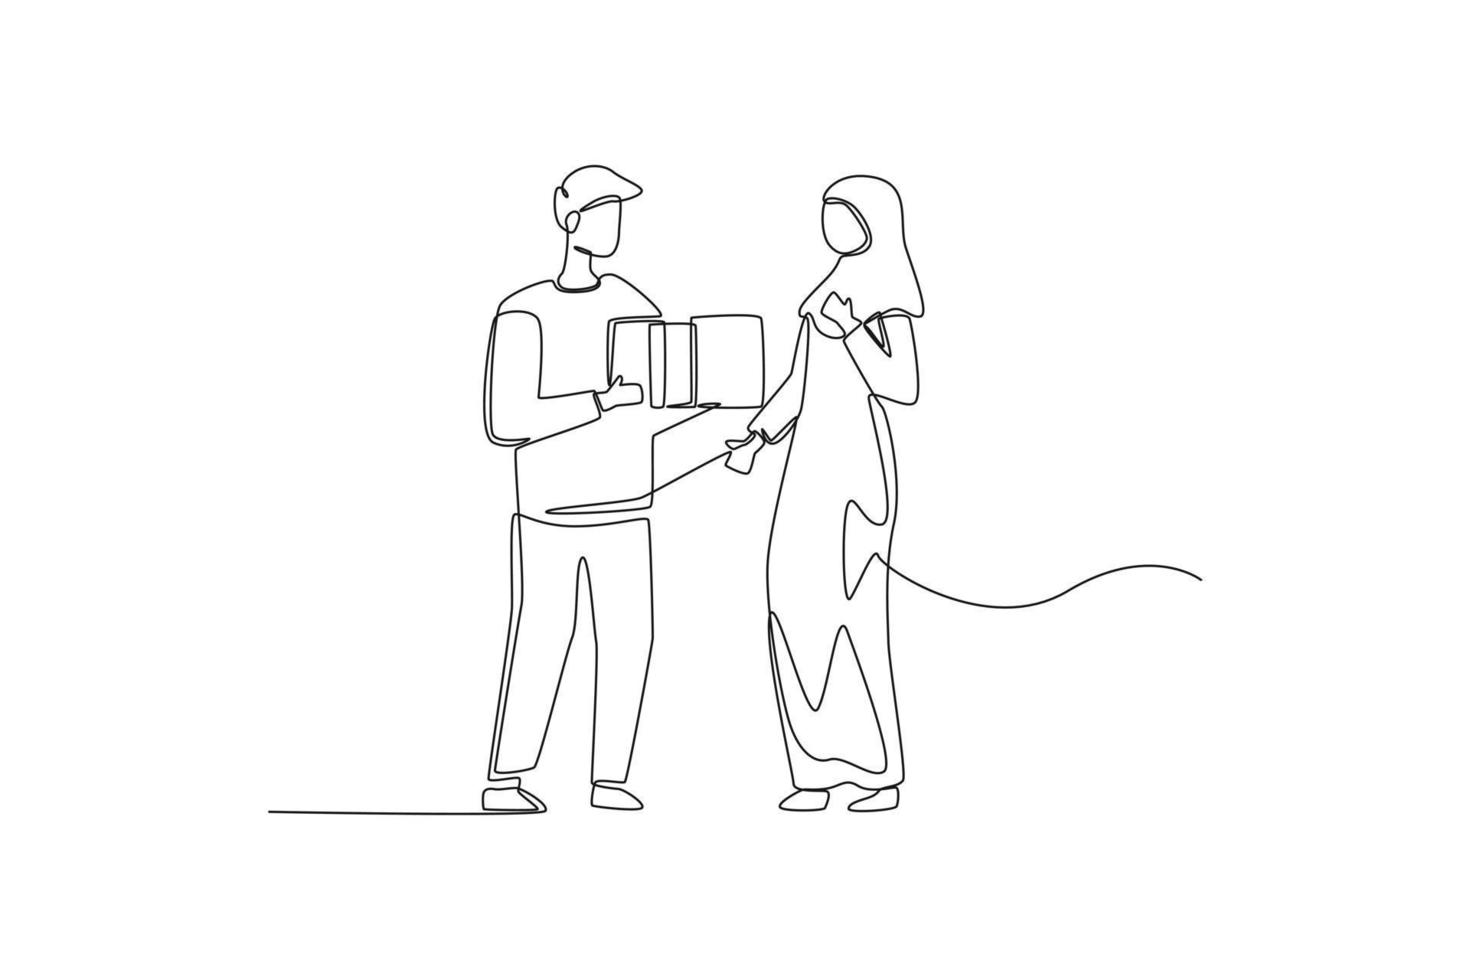 único homem muçulmano de desenho de linha dá um presente surpresa para sua esposa hijabi. conceito de caixa de presente. linha contínua desenhar design gráfico ilustração vetorial. vetor